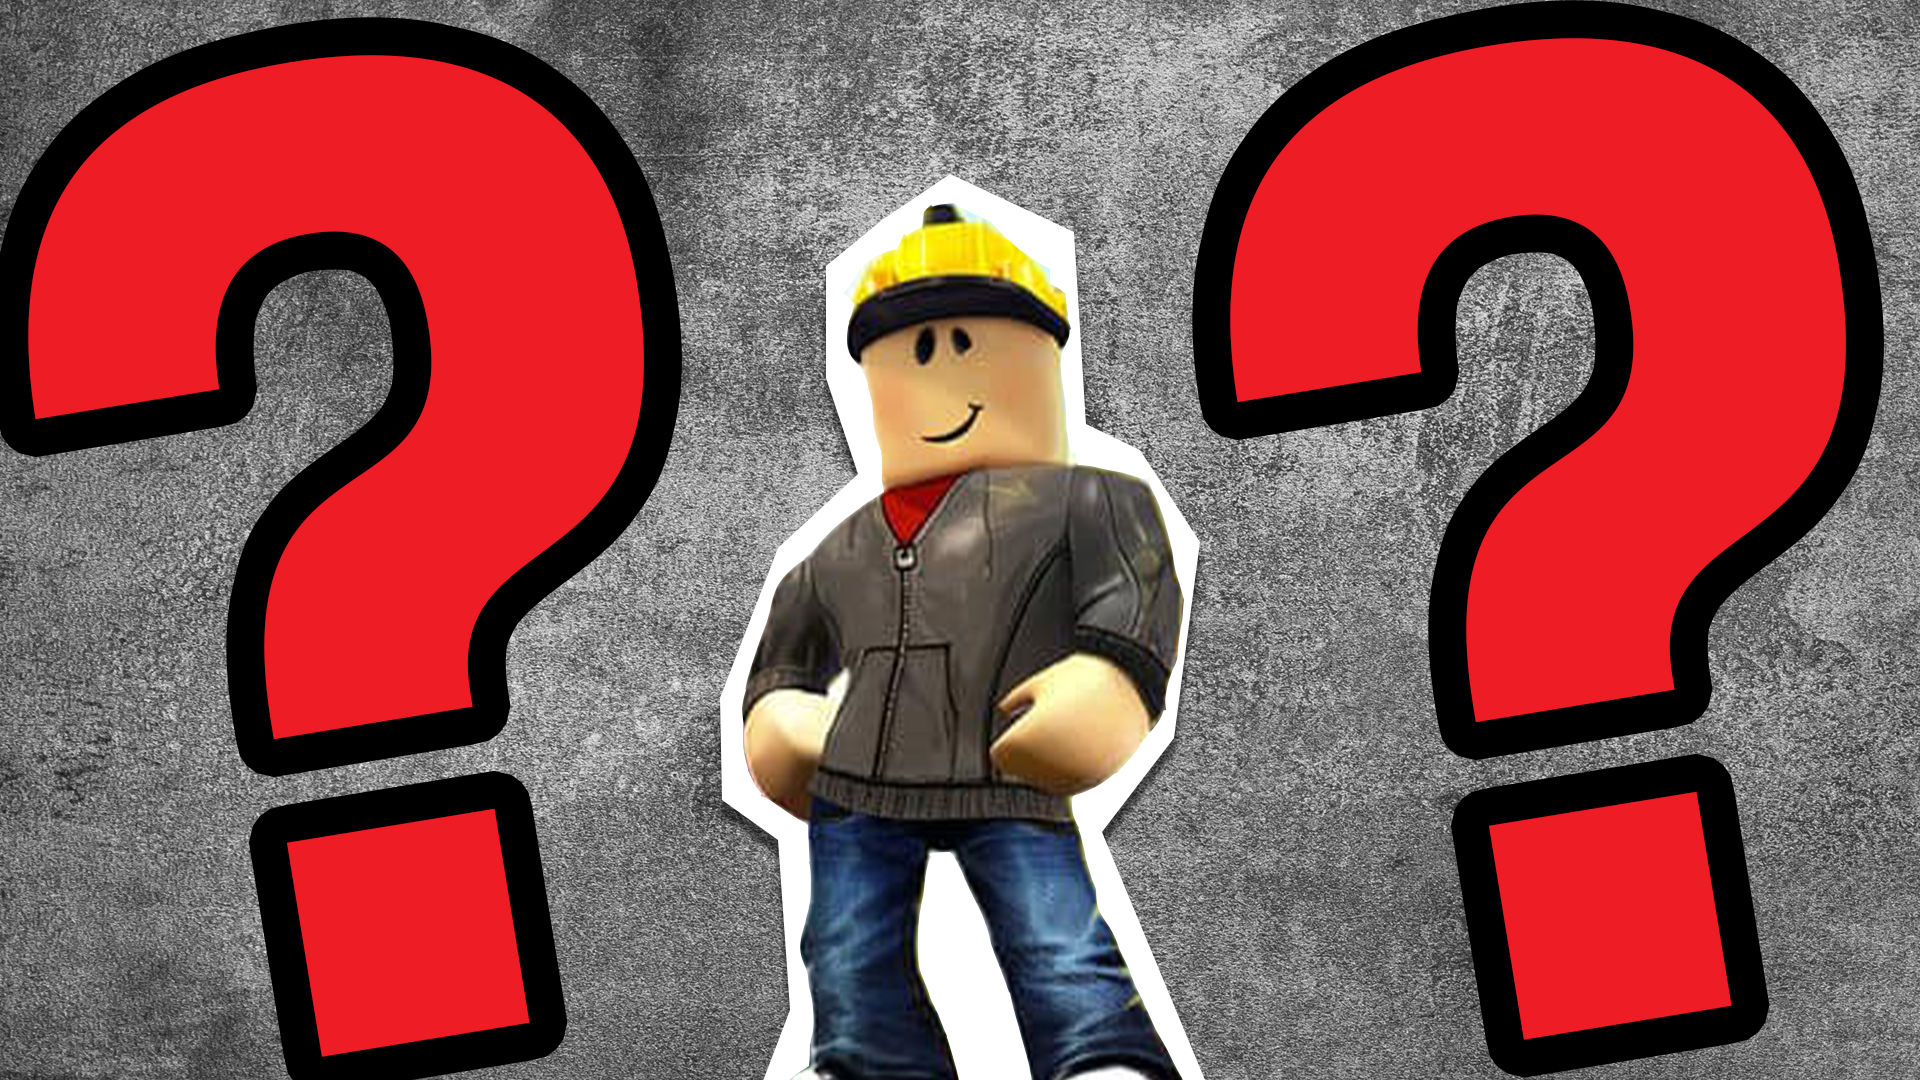 NOOOOO NOT BUILDERMAN (More classic roblox avatars updated